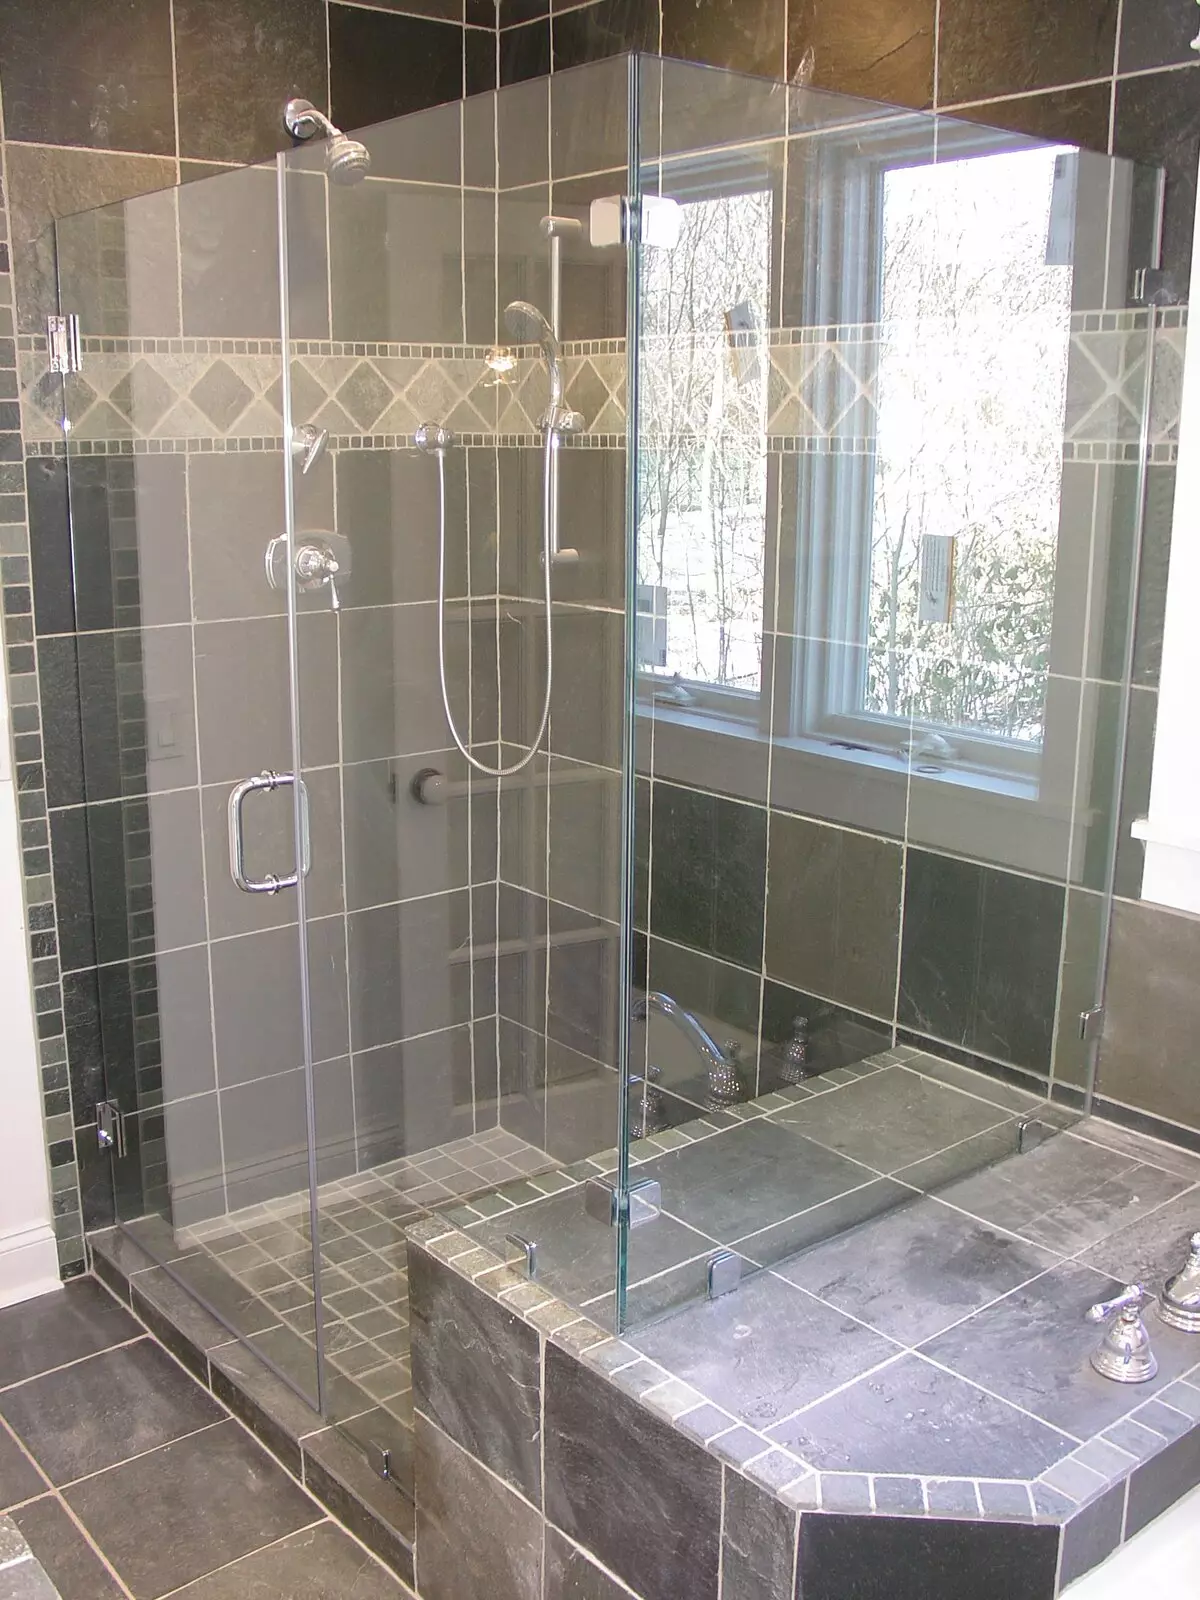 Dušas vonios kambaryje be salono (86 nuotraukos): vonios kambario dizaino parinktys su dušu be padėklų ir plytelių kabinų, projektų 21384_2